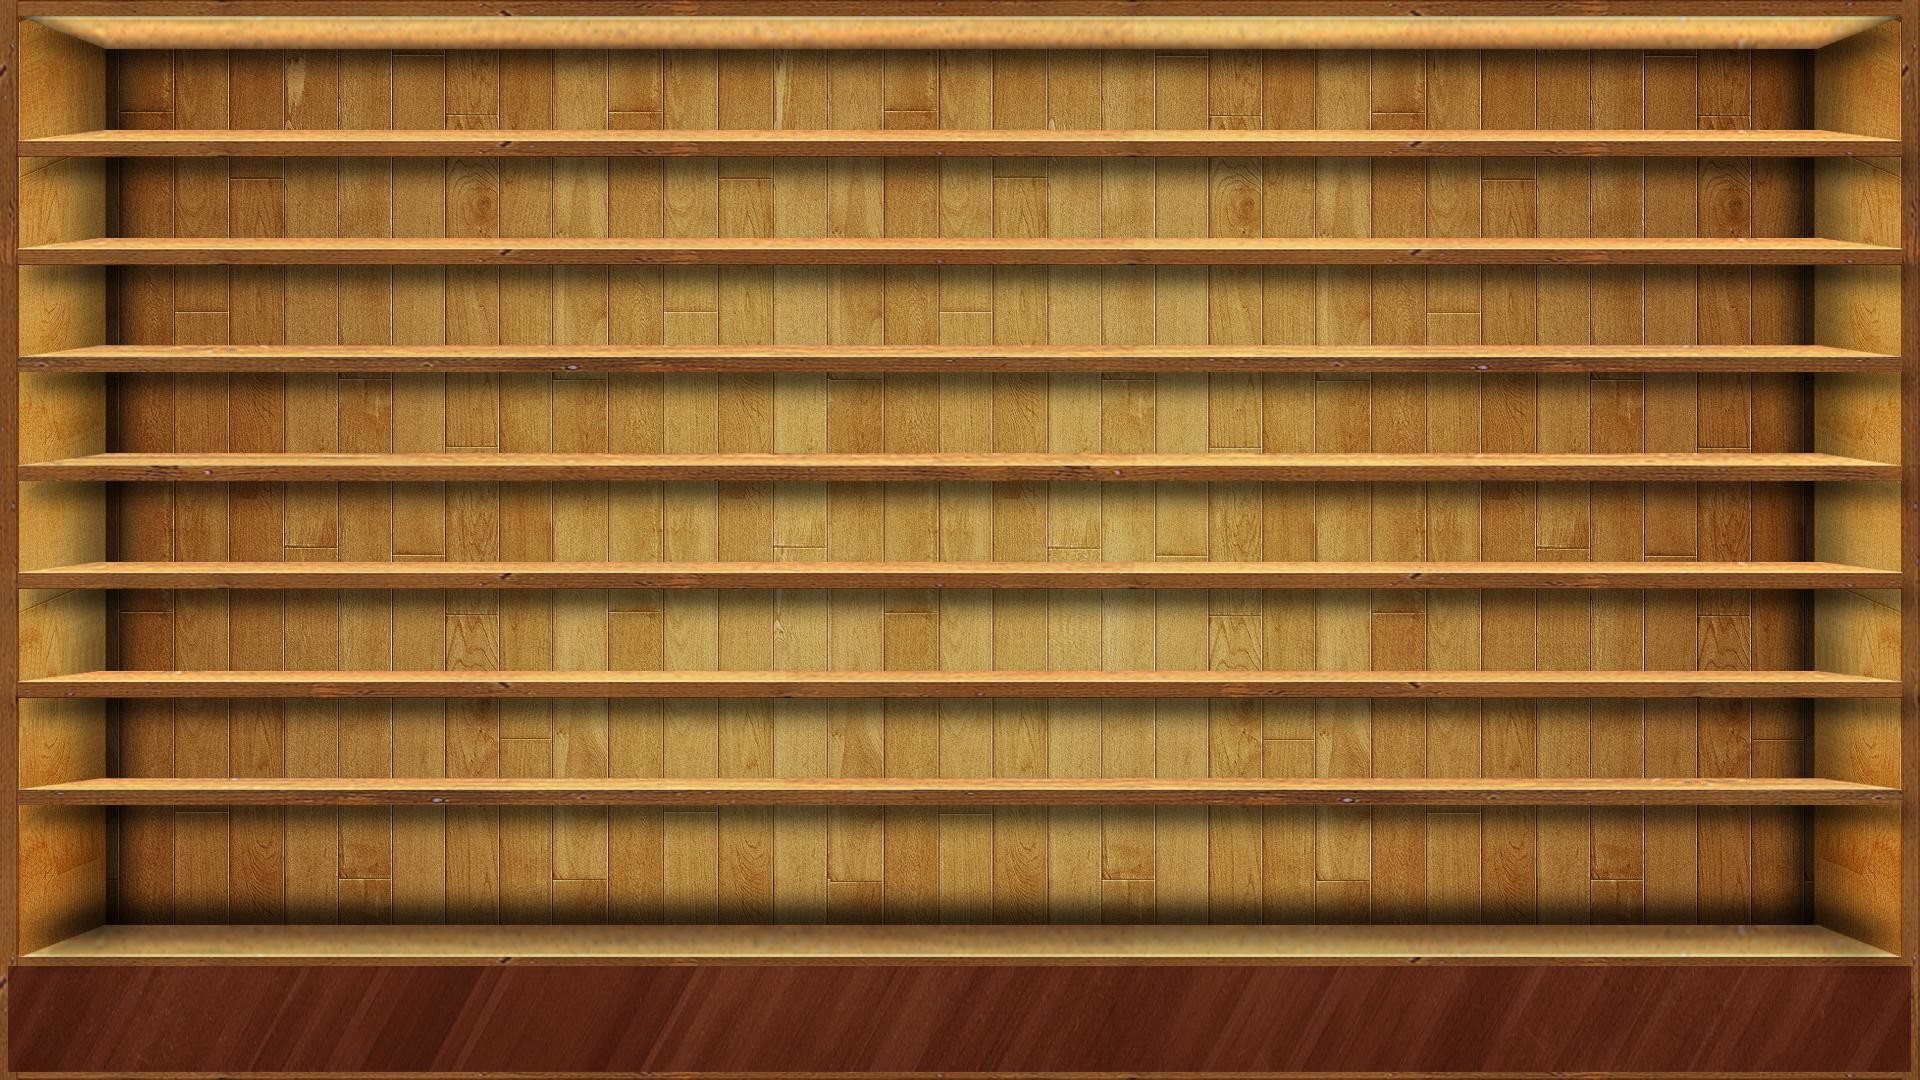 1920x1080 Wood Shelves HD Wallpaper #1456 Wallpaper computer | best website .